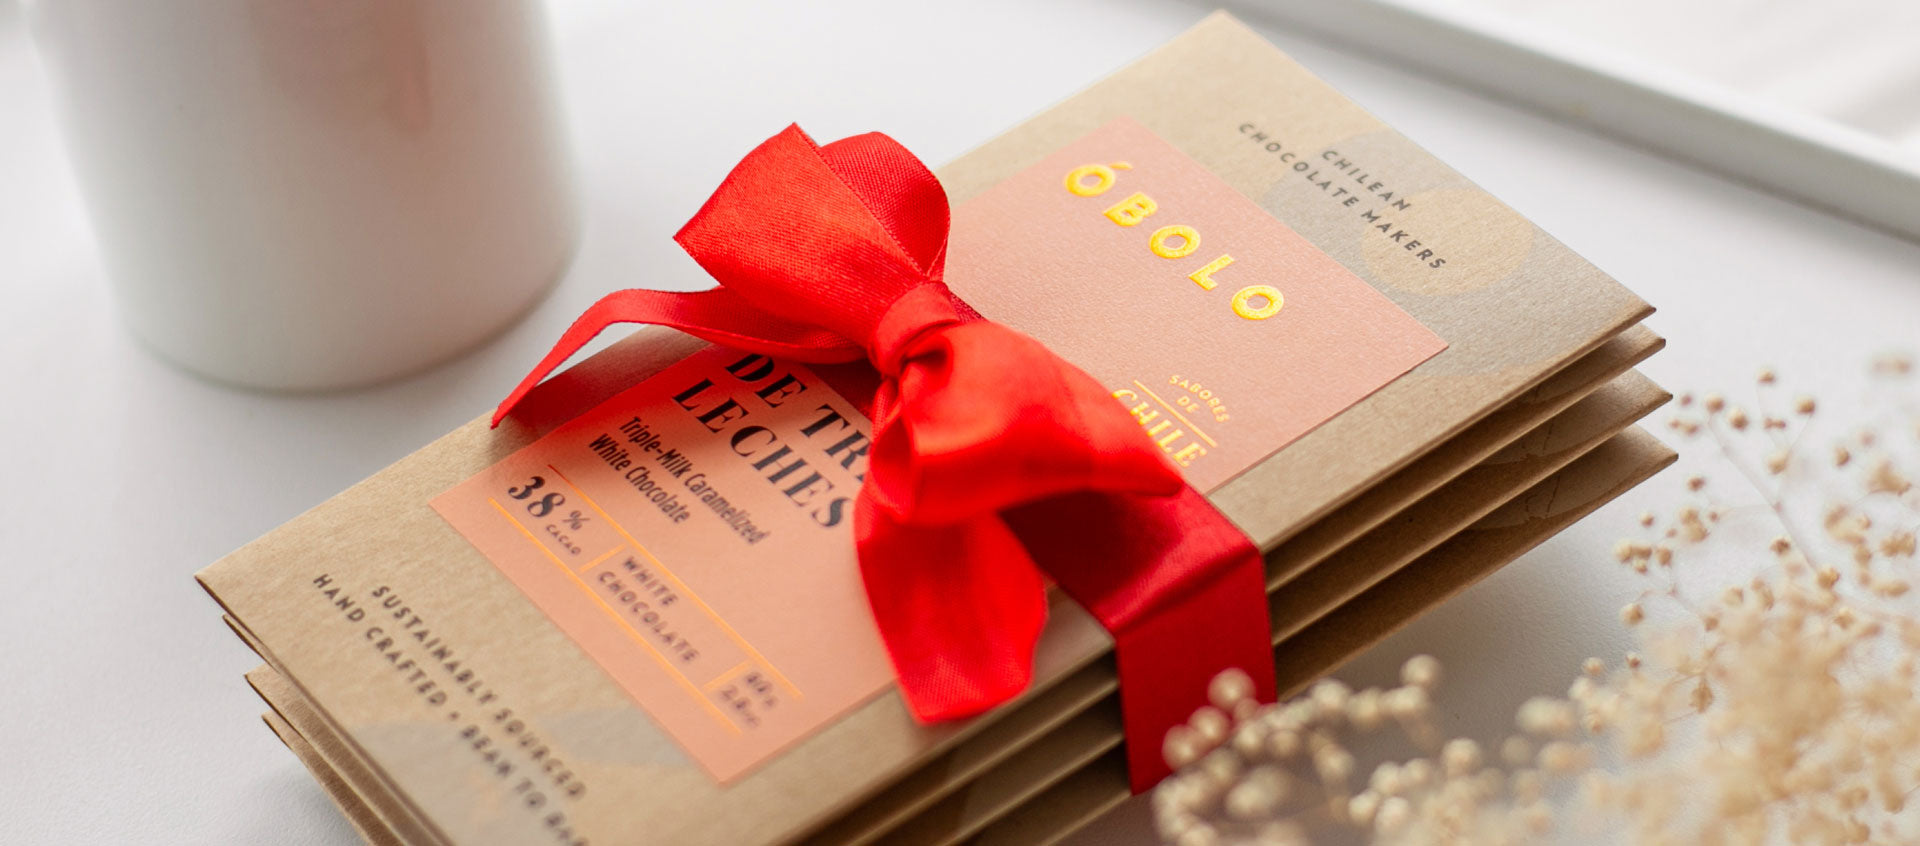 La historia del chocolate en San Valentín: ¿Por qué regalamos chocolate el 14 de febrero?